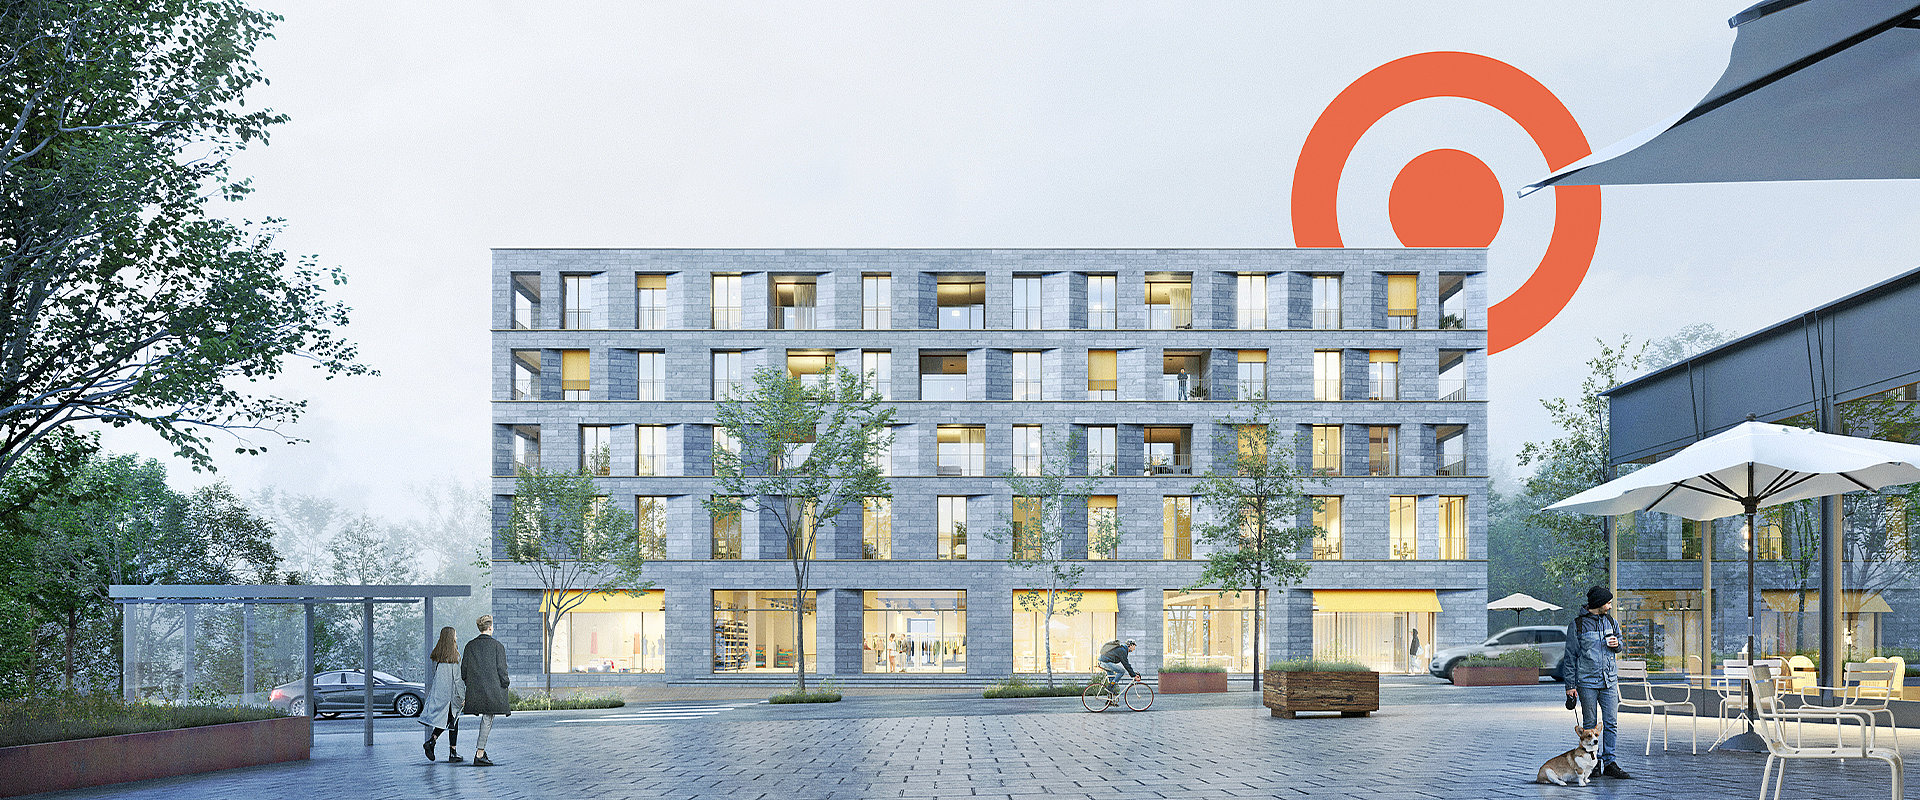 Rendering des neuen Gebäudes Am Garnmarkt 17 in Götzis mit orangem PRISMA Logoelement im Hintergrund.